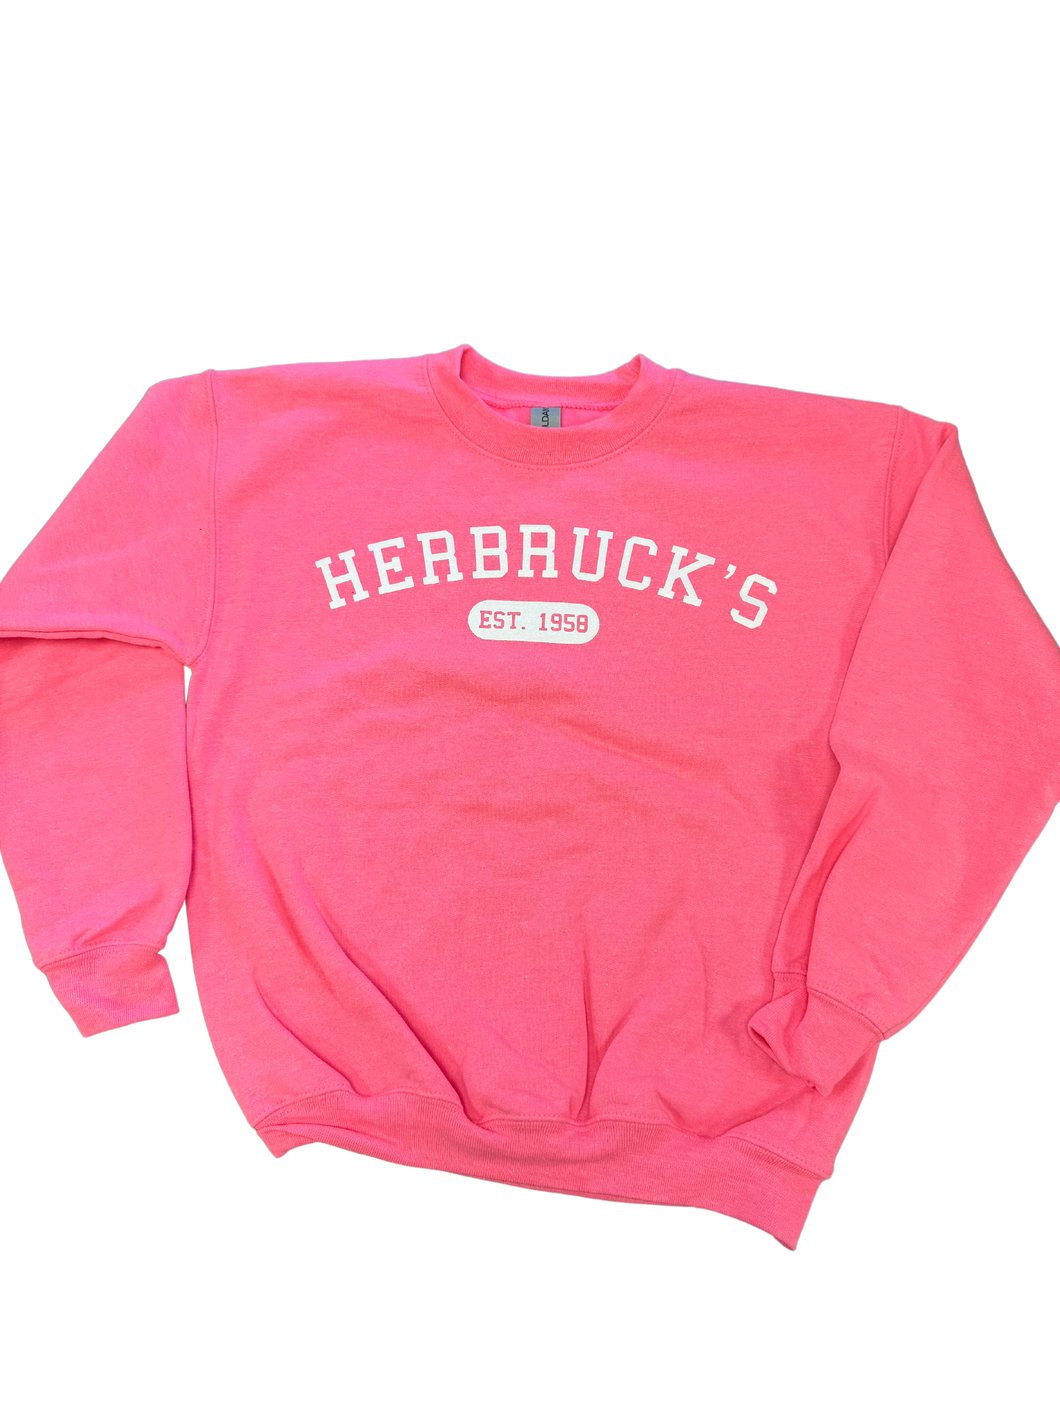 Pink Herbruck's Crewneck (Adult)